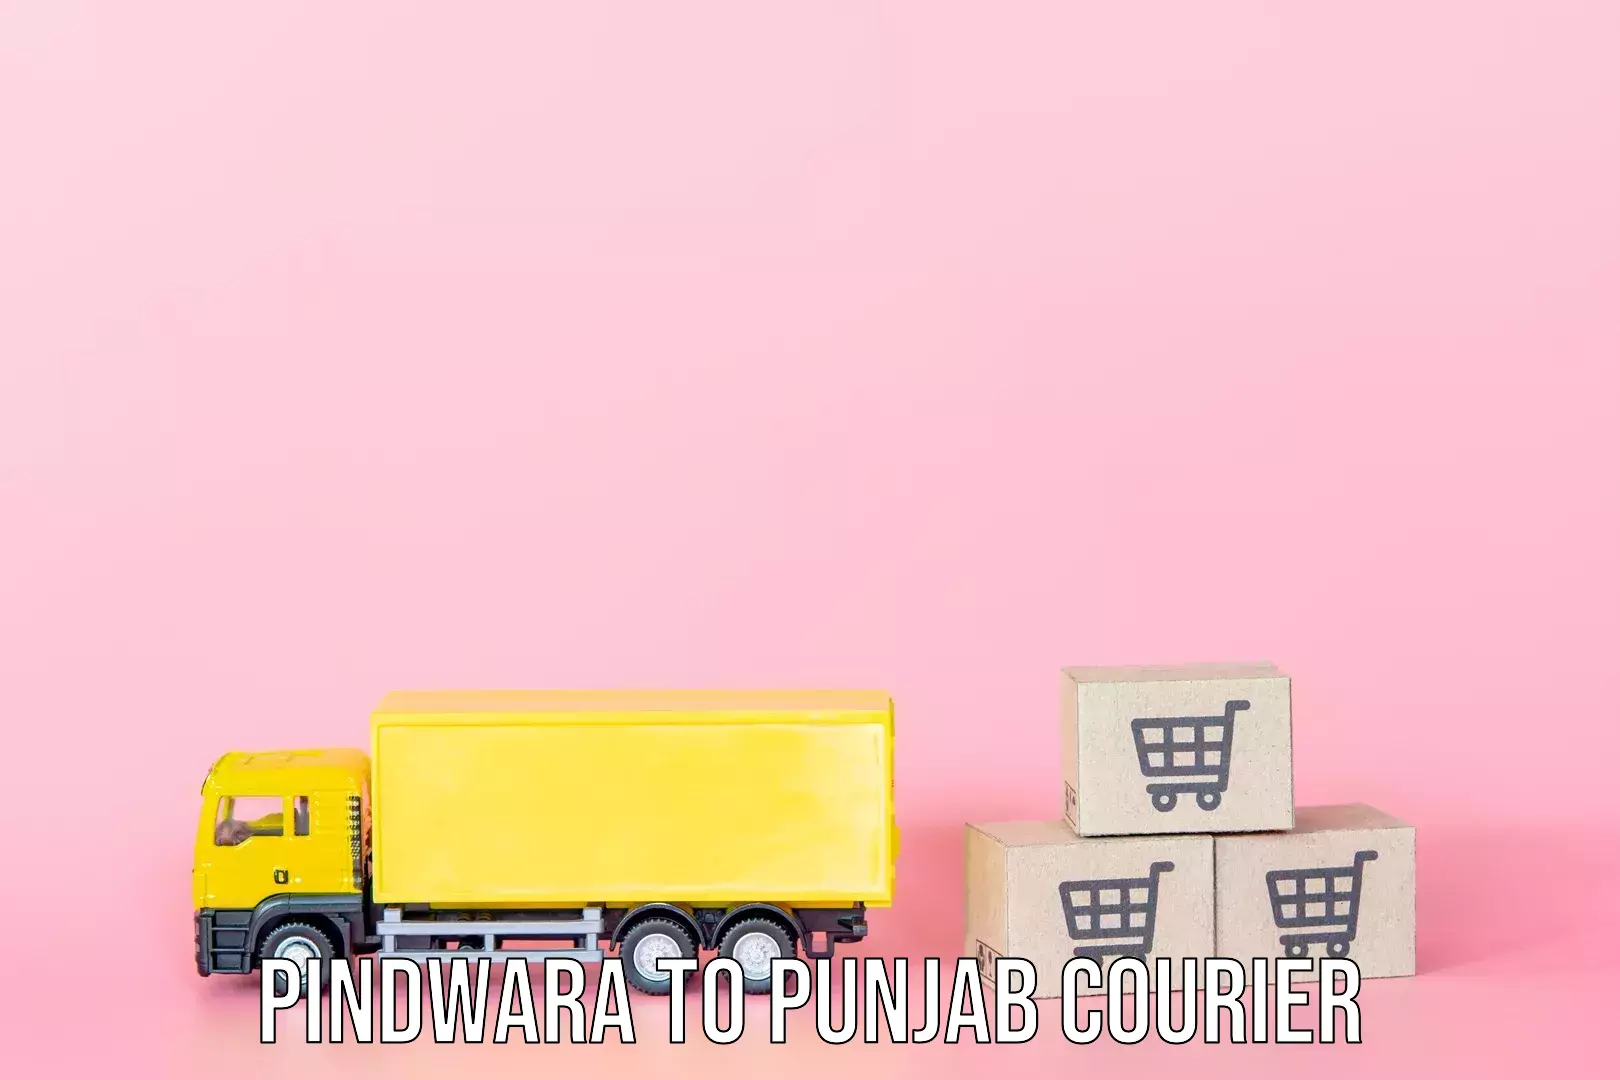 Baggage transport professionals Pindwara to Punjab